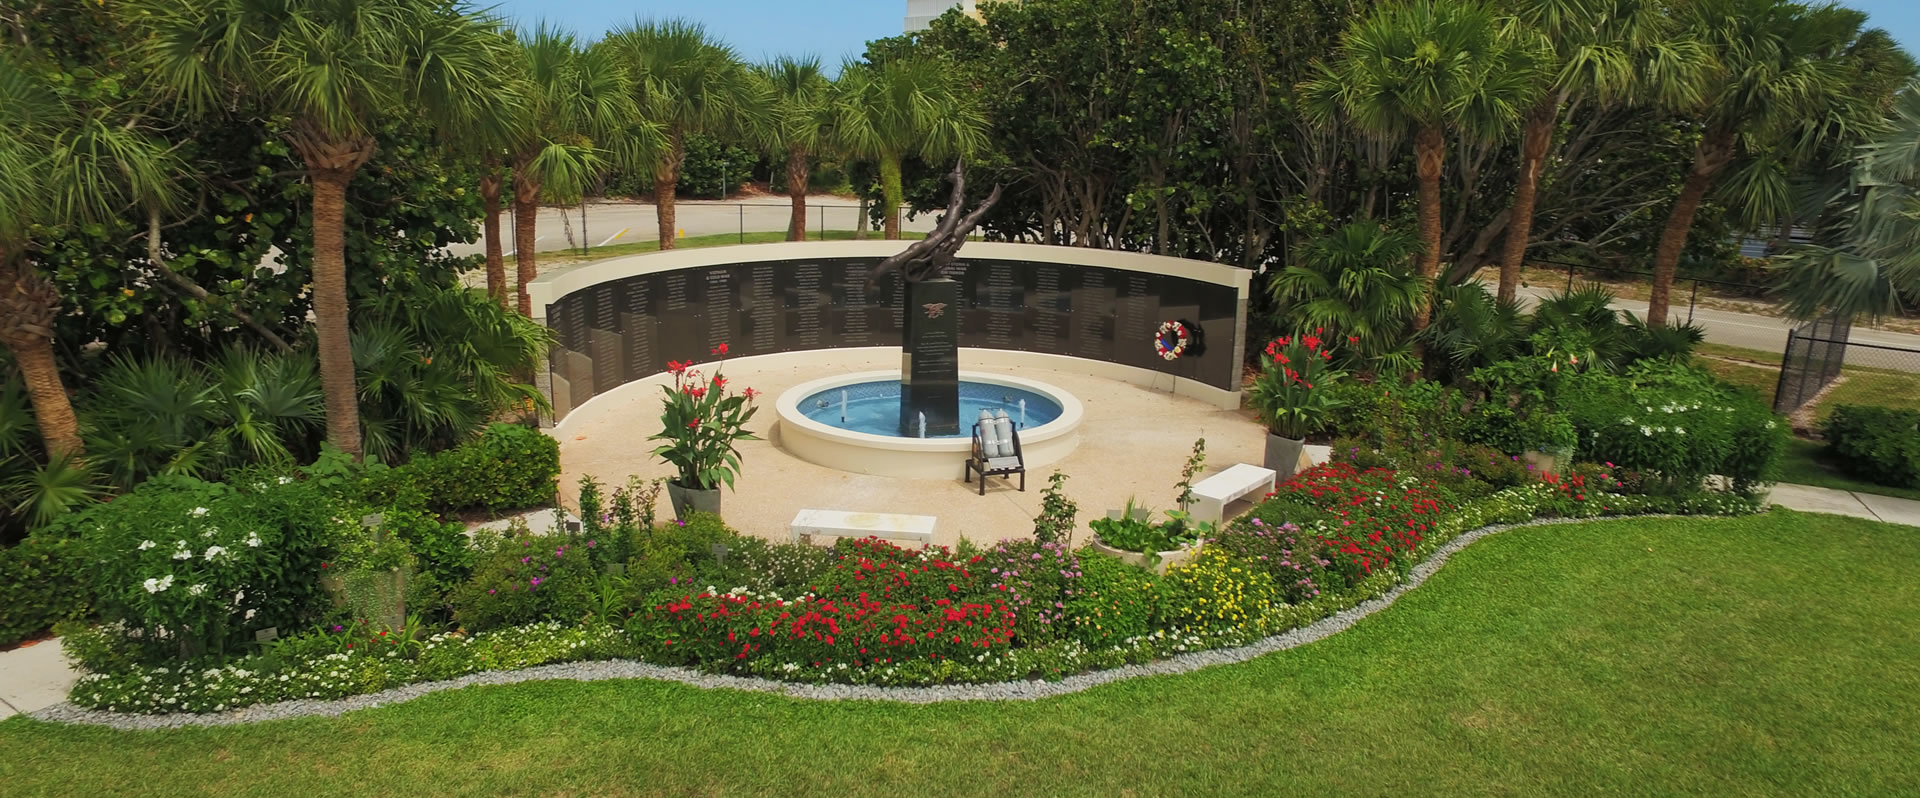 Navy SEAL Memorial Garden